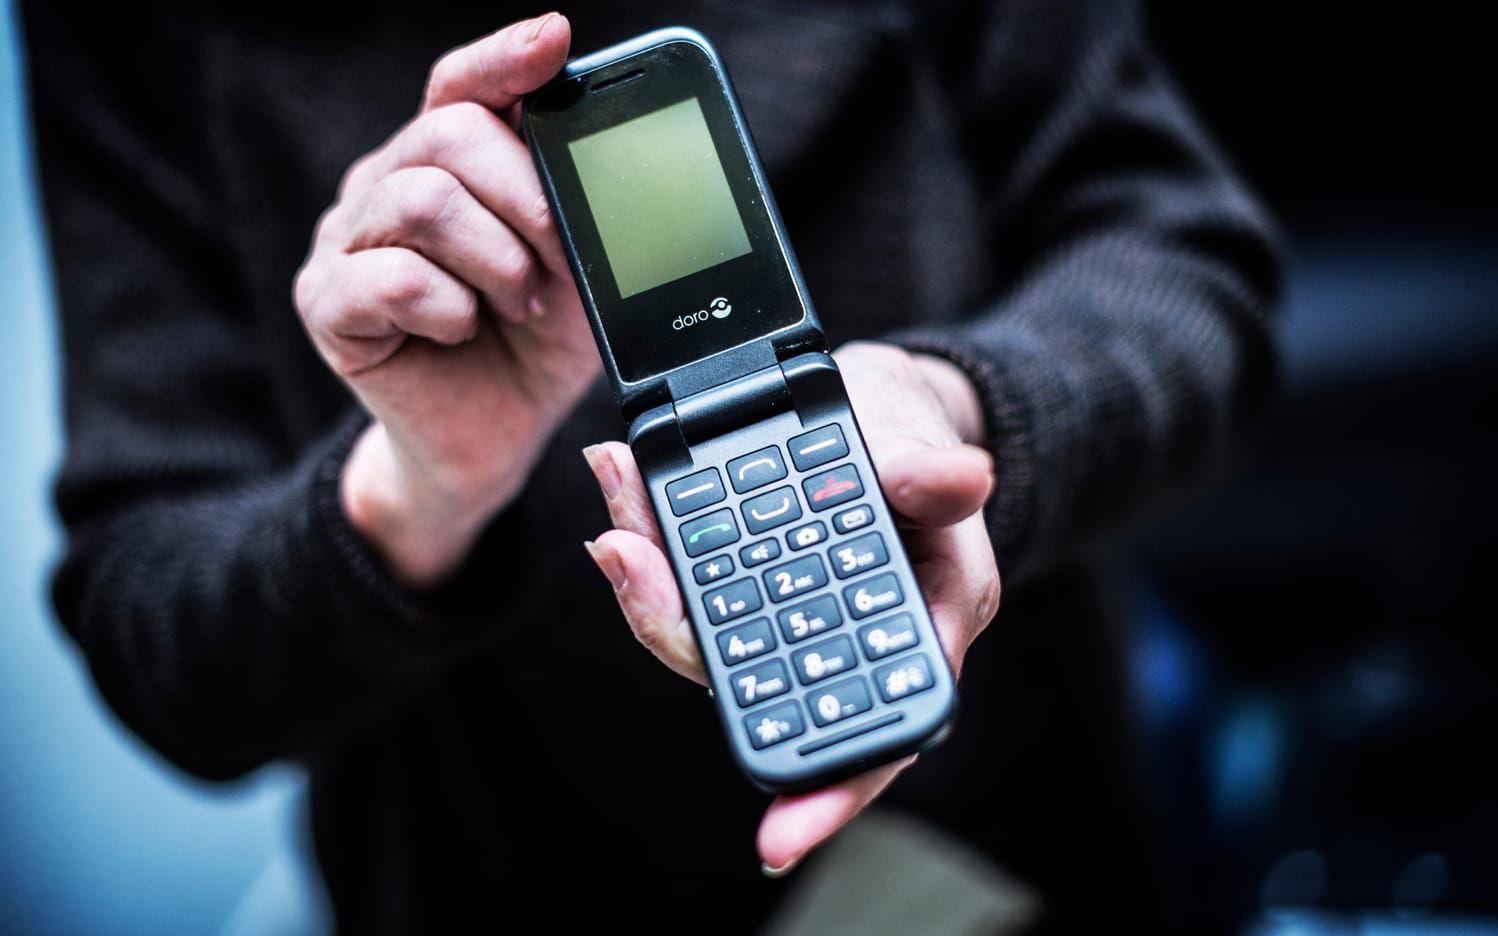 Trots att smarta telefoner med pekskärm har fler funktioner och hjälpmedel använder Rosina Mann en telefon med kännbara knappar som är lättare att trycka på. Foto: Jenny Ingemarsson